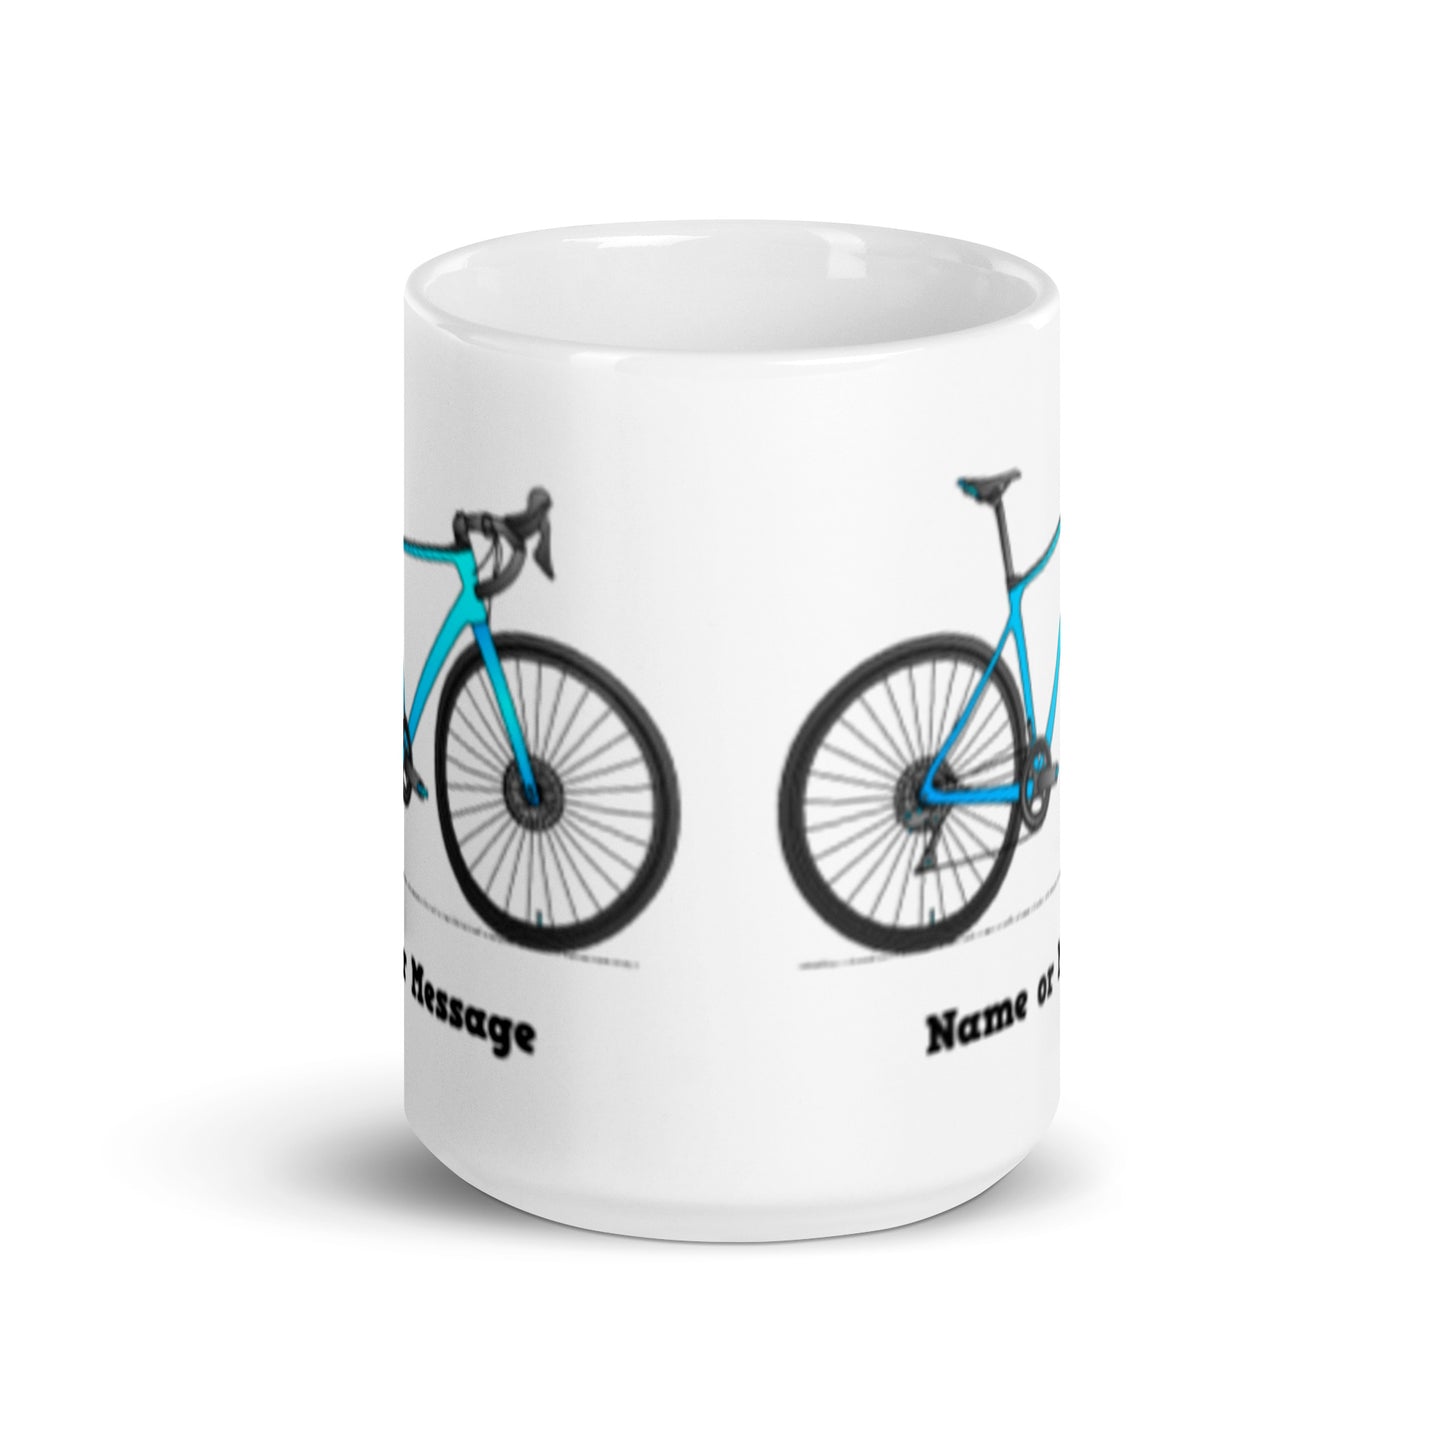 Blue Road Bike Mug, Personalized